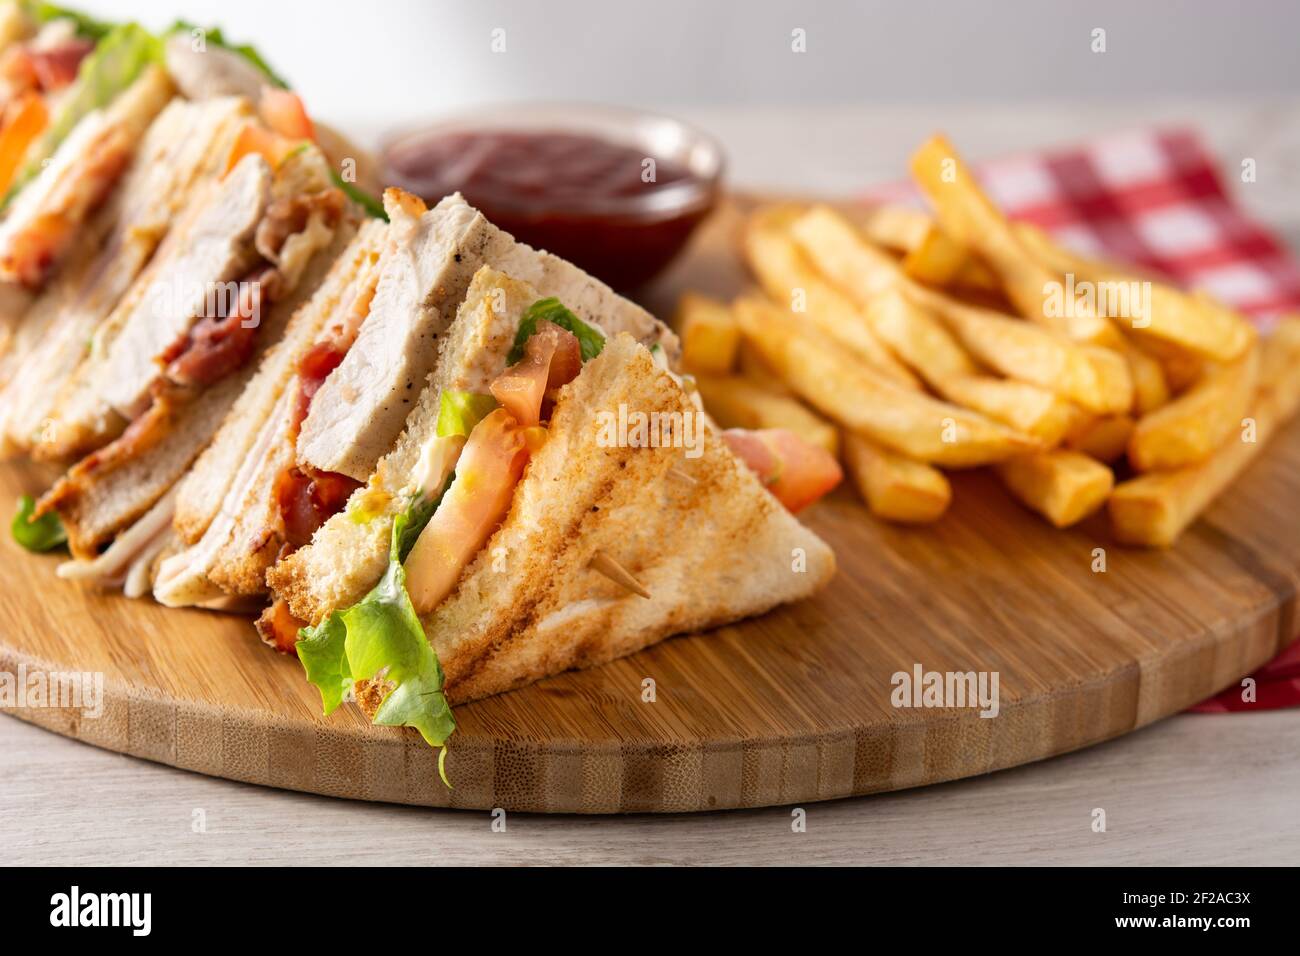 Sándwich club y patatas fritas con salsa de ketchup en madera tabla Foto de stock